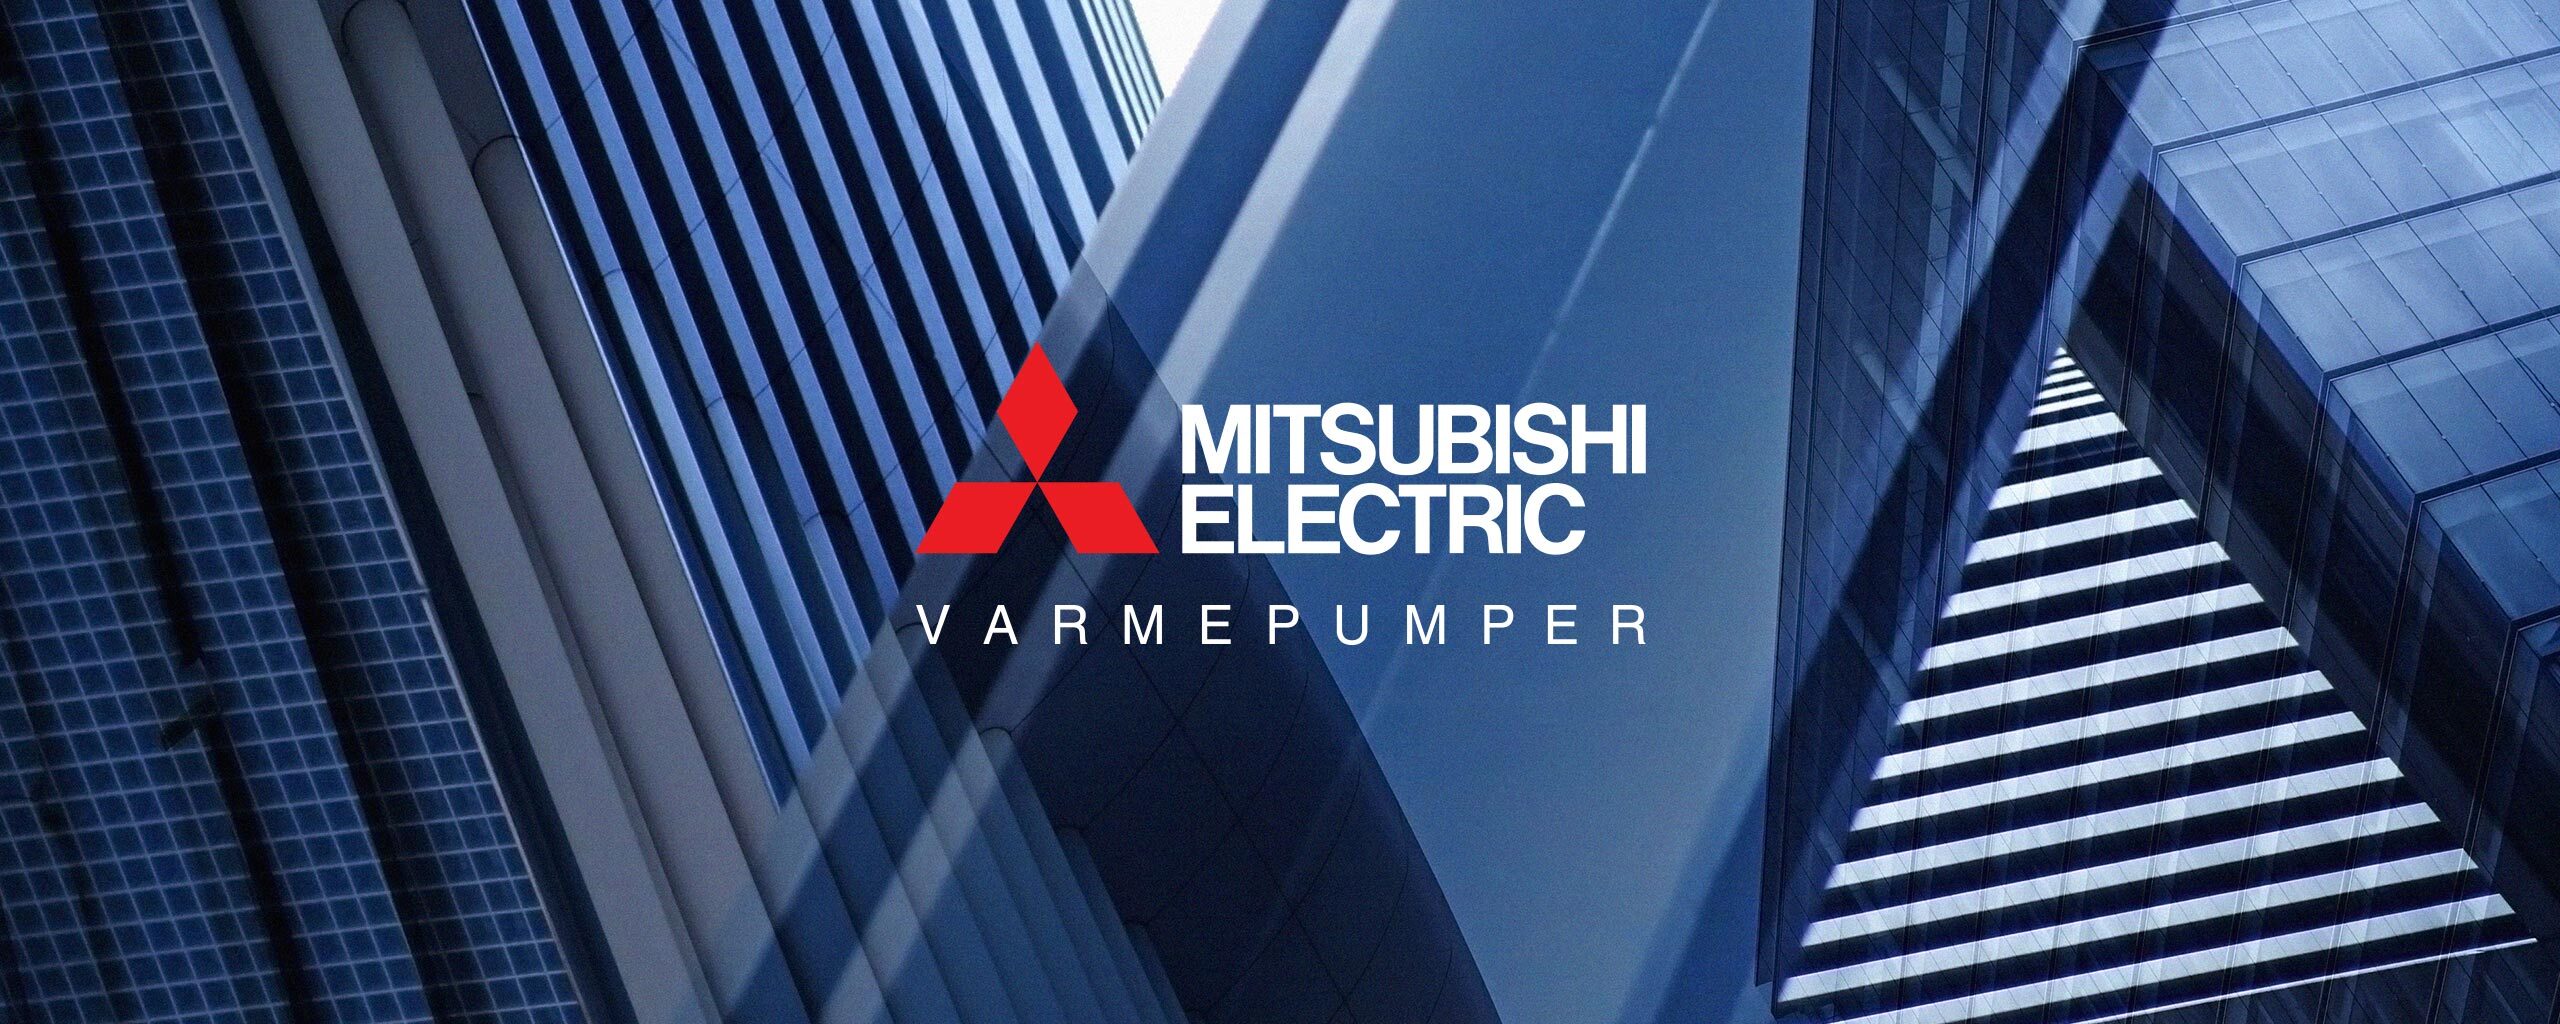 Utsnitt av bygningsmasse og Mitsubishi Electric logo.